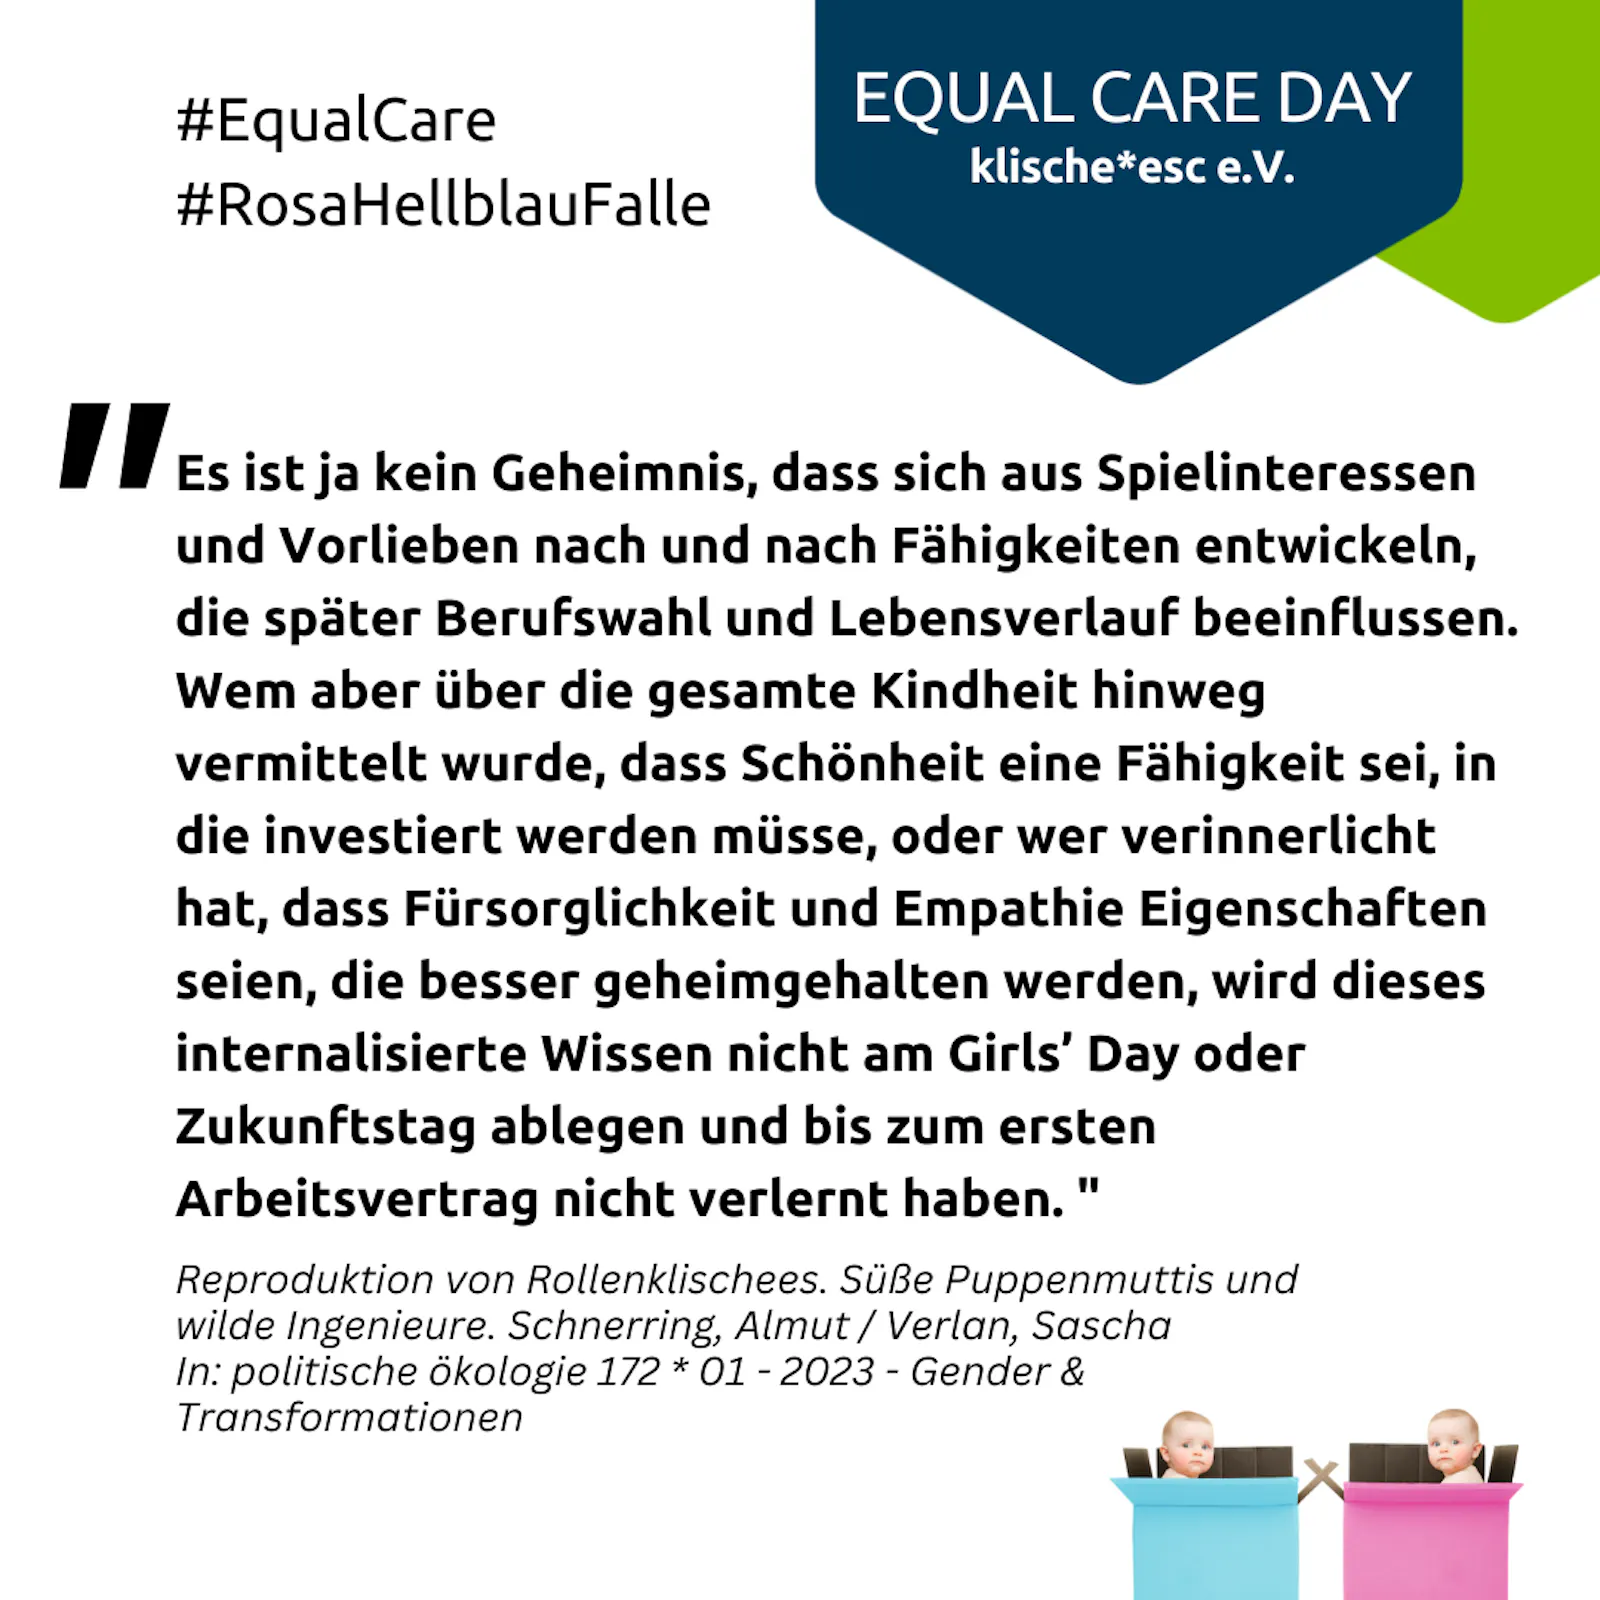 Quadratische Bildkachel mit Zitat aus dem Text oben: "Es ist ja kein Geheimnis… nicht verlernt haben". und Hashtags #EqualCare, #RosaHellblauFalle